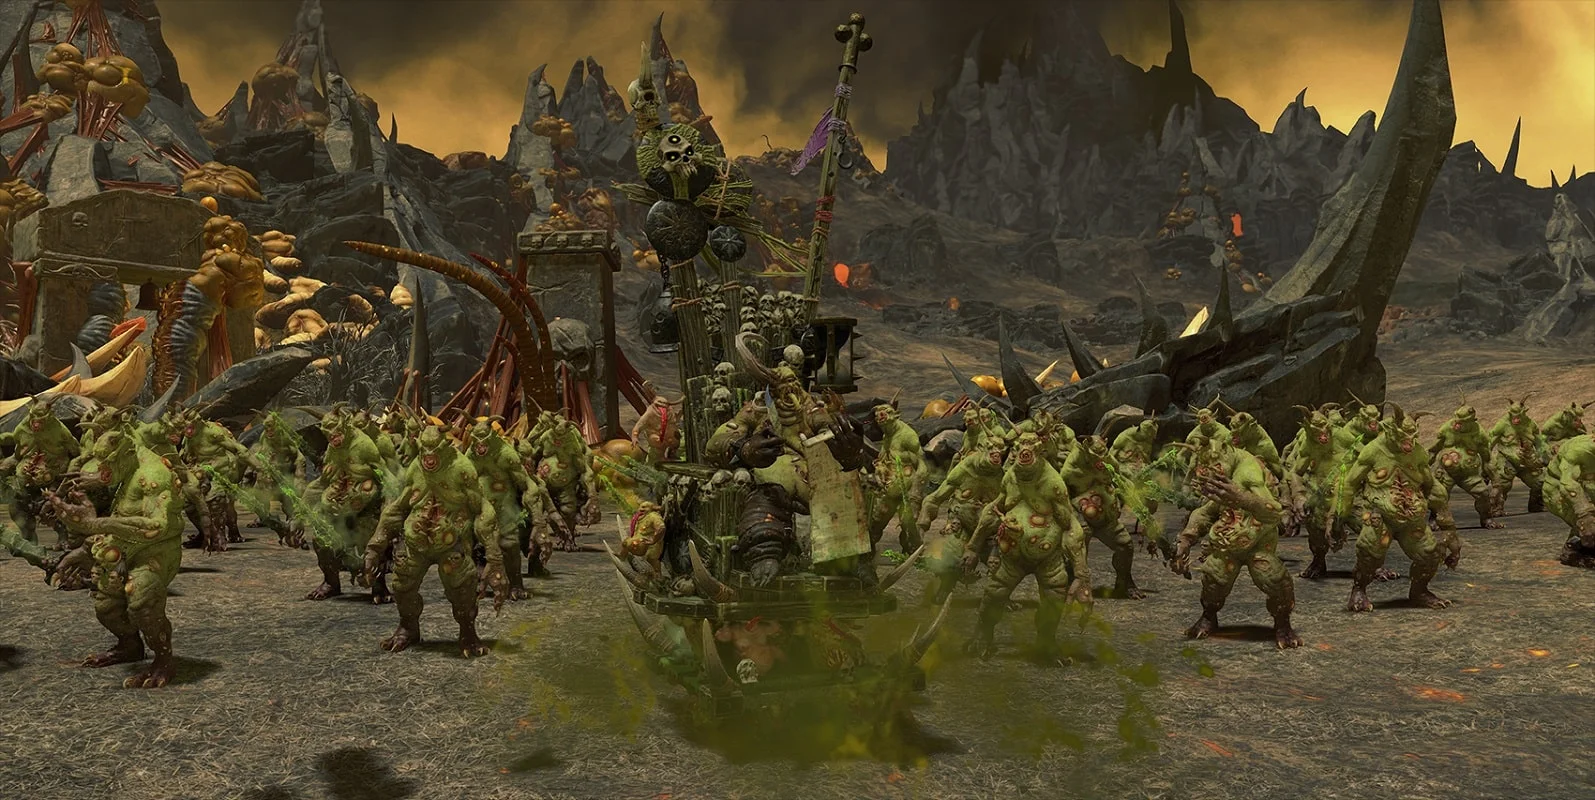 Обложка: скриншот игры Total War: Warhammer 3